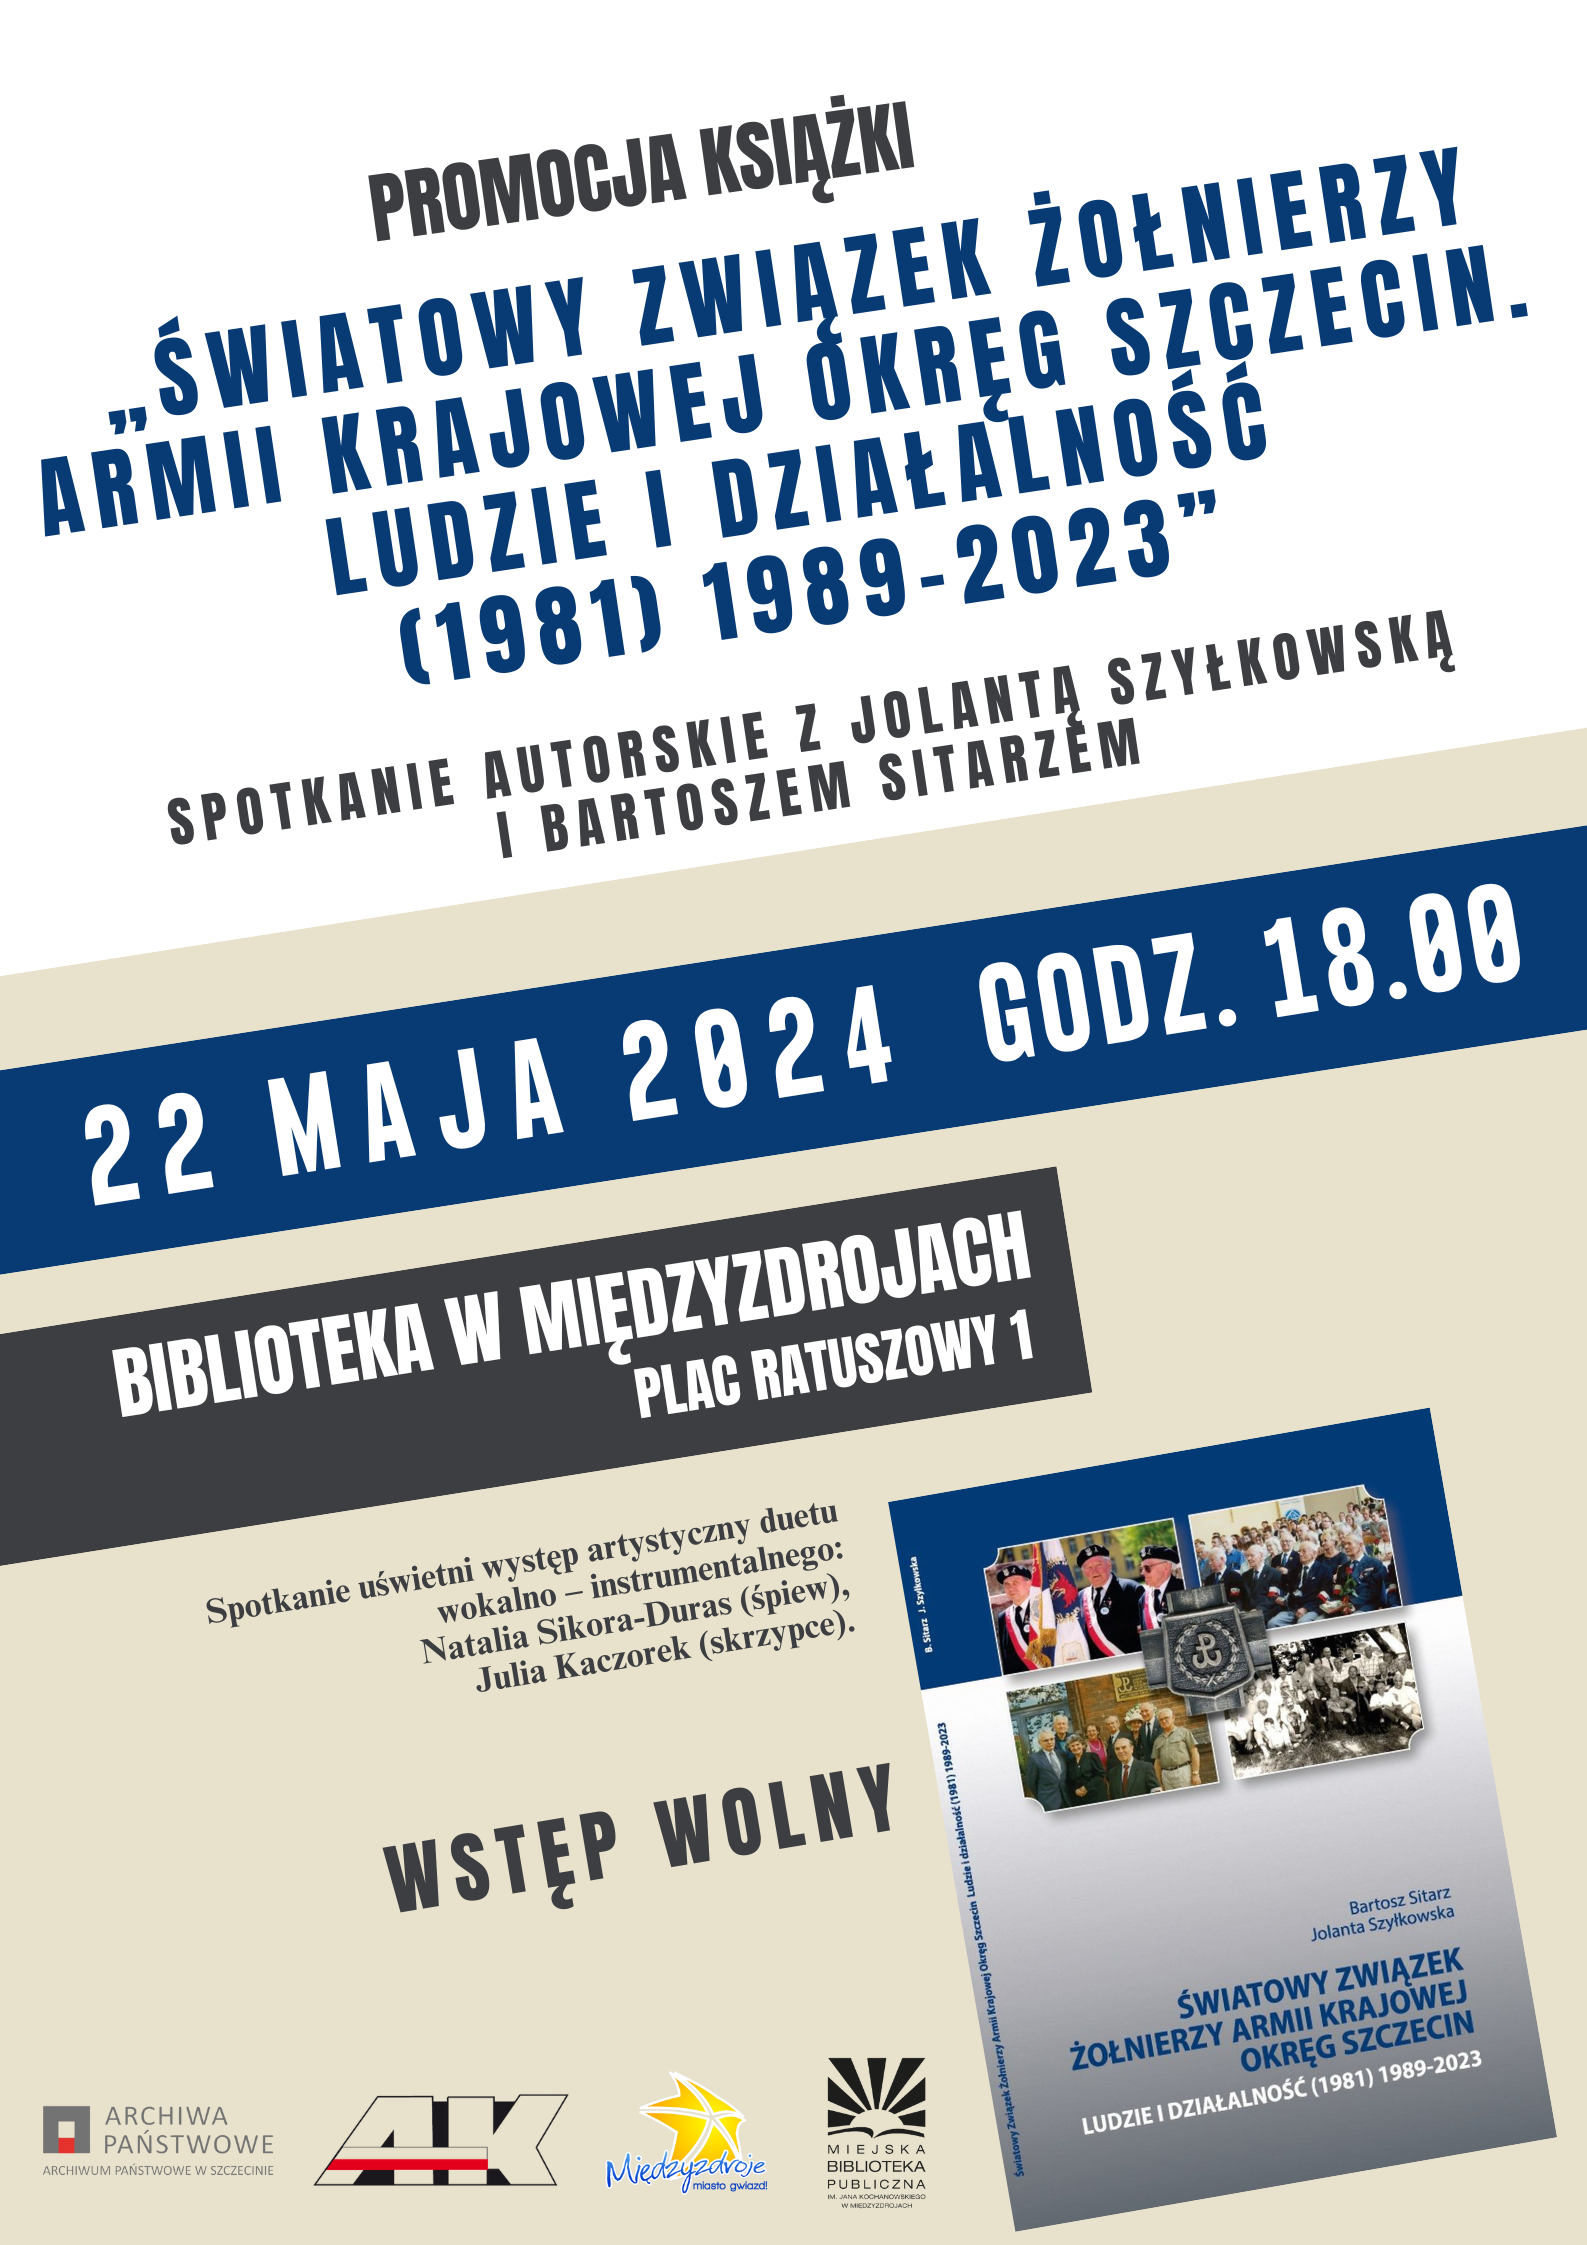 Promocja książki i spotkanie autorskie z Jolantą Szyłkowską i Bartoszem Sitarzem - 22 maja 2024 r.